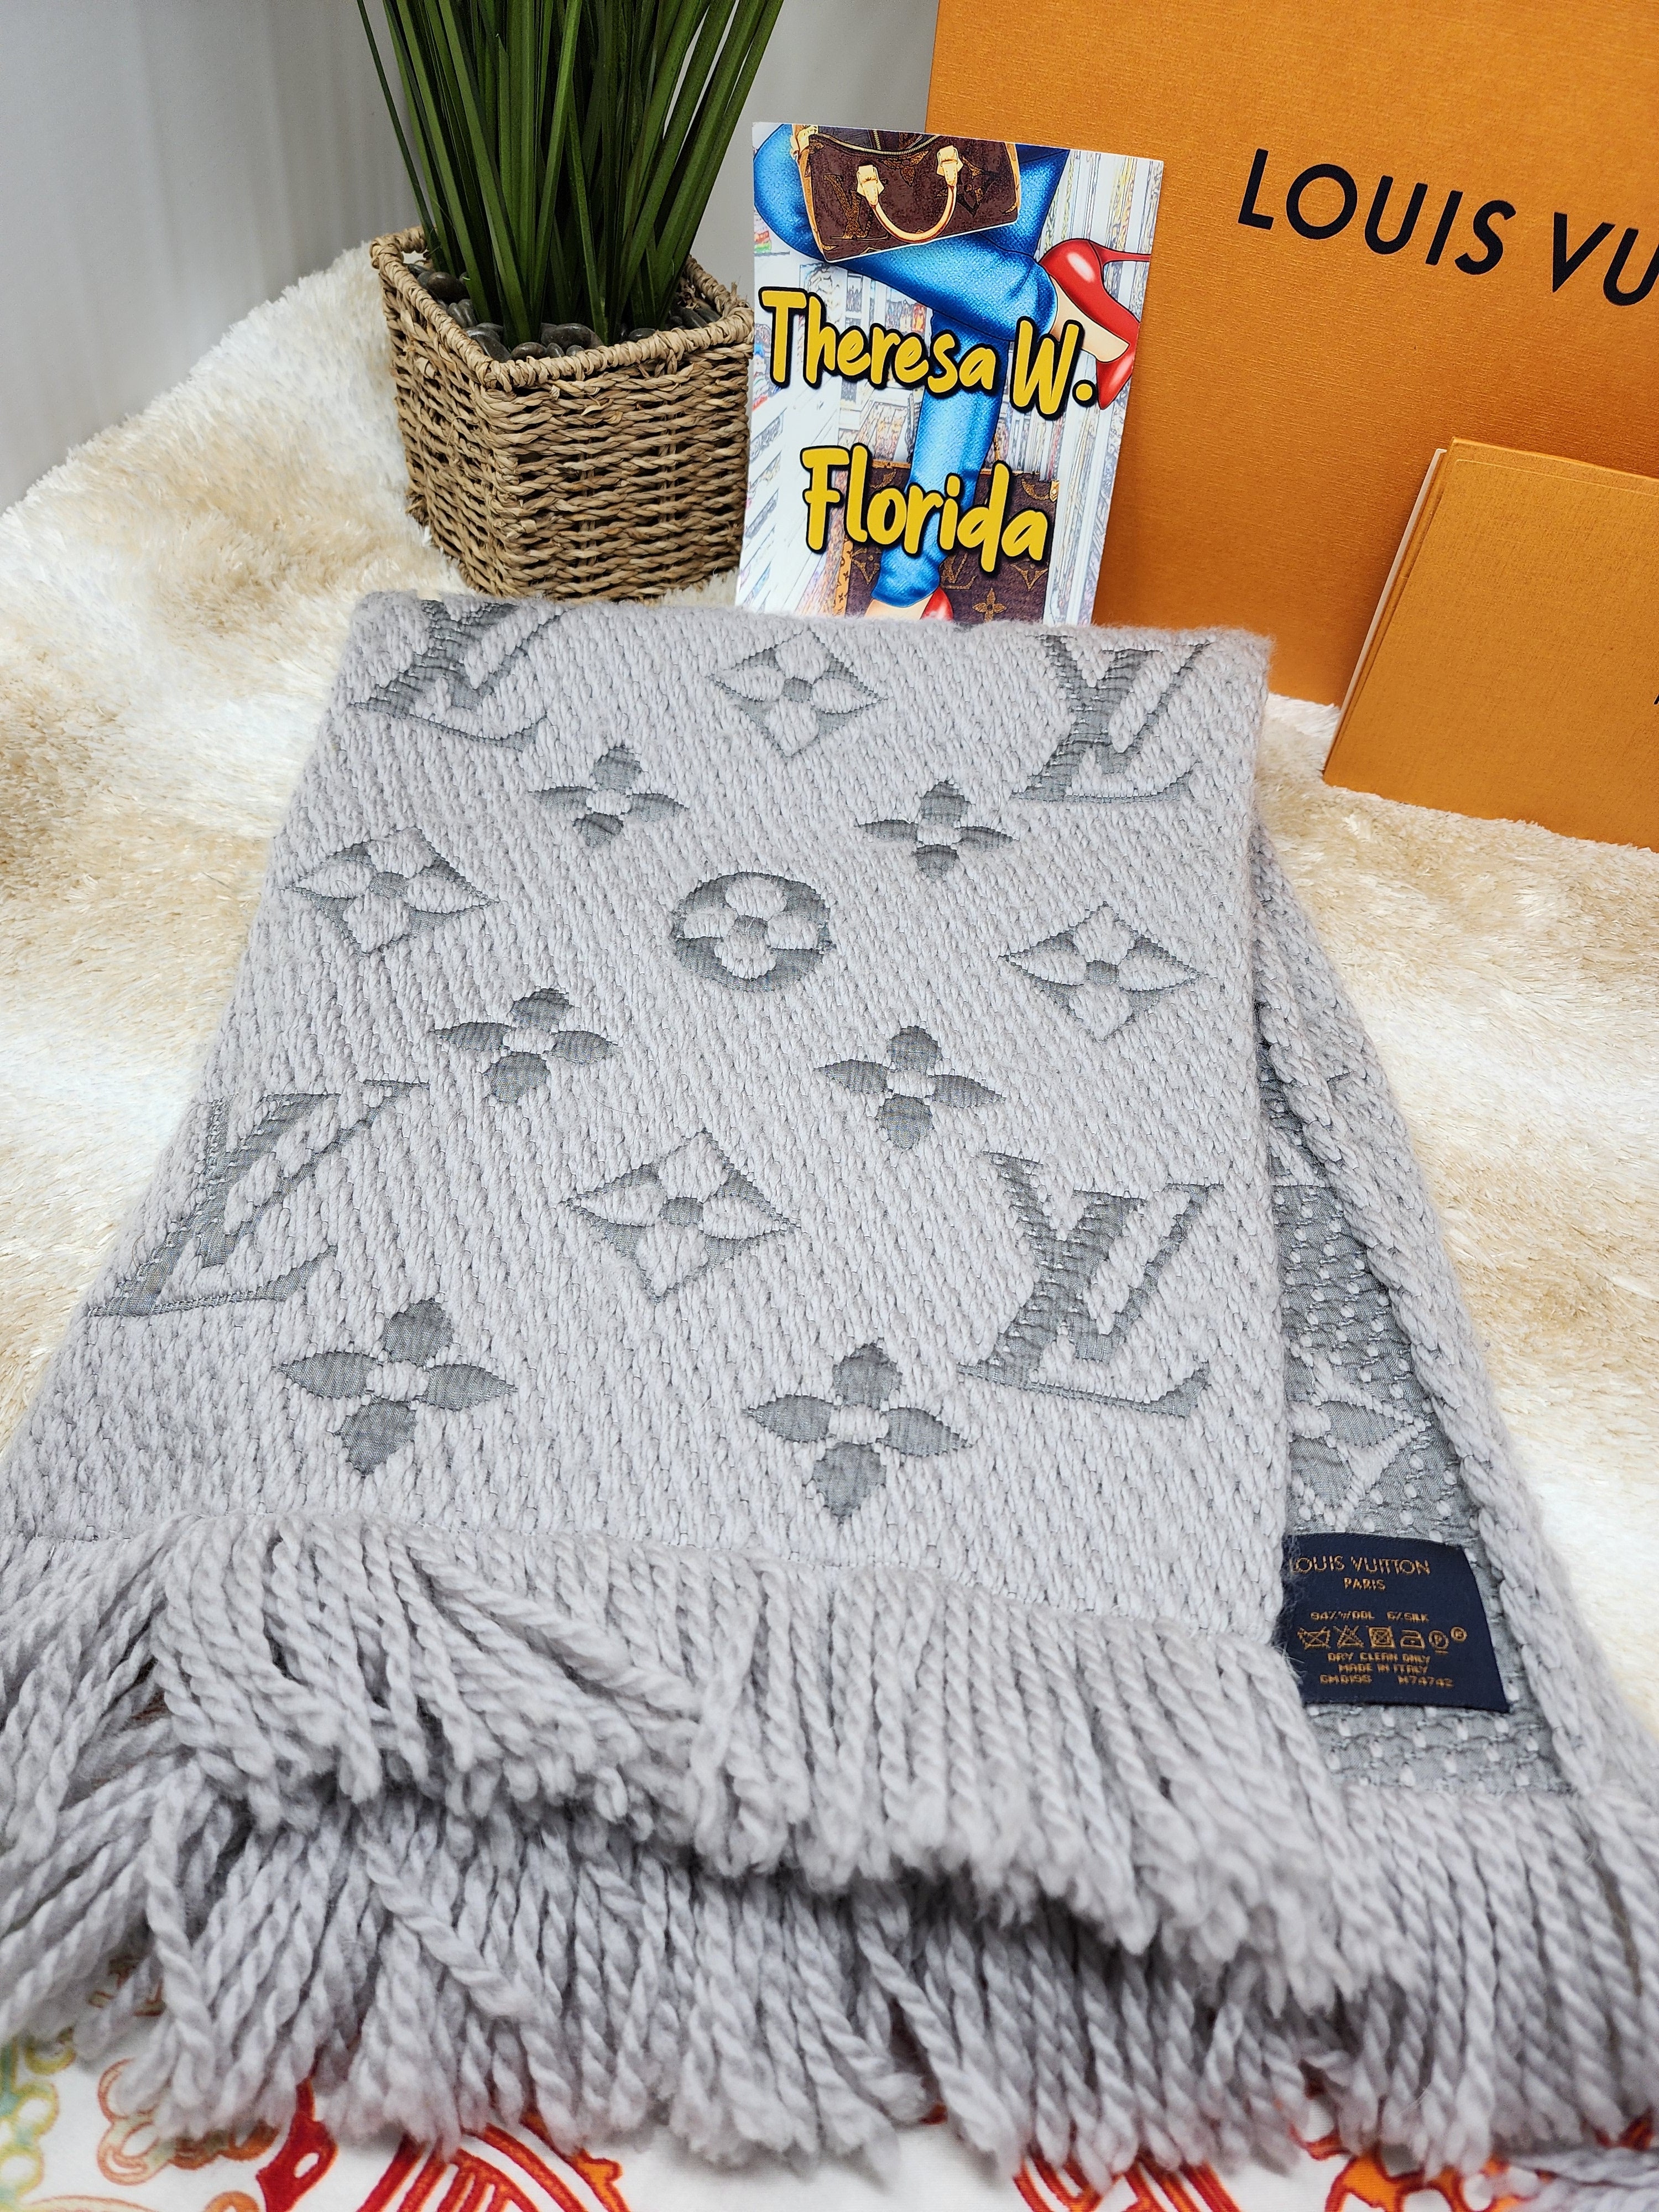 Shop Louis Vuitton Logomania scarf by importshopERUMU